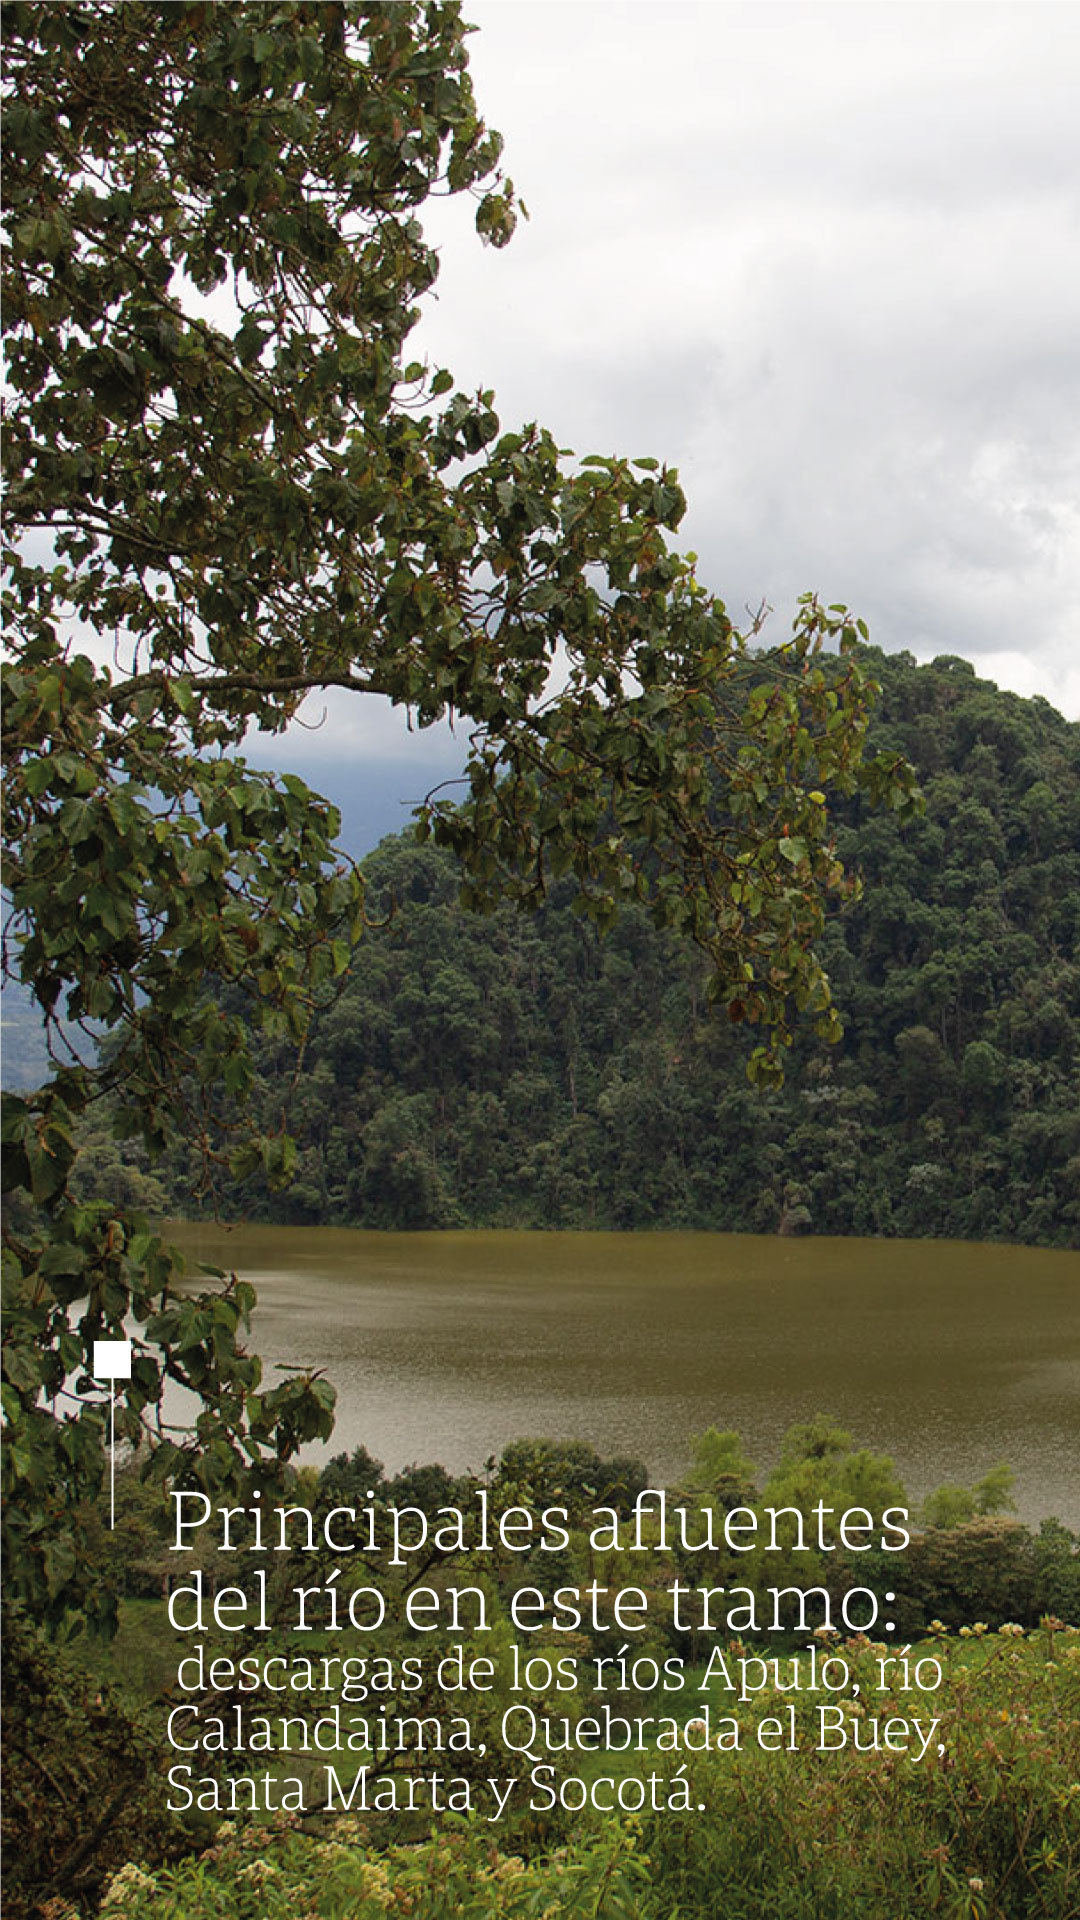 Día del río Bogotá: ¿Por qué salvar a este importante afluente?